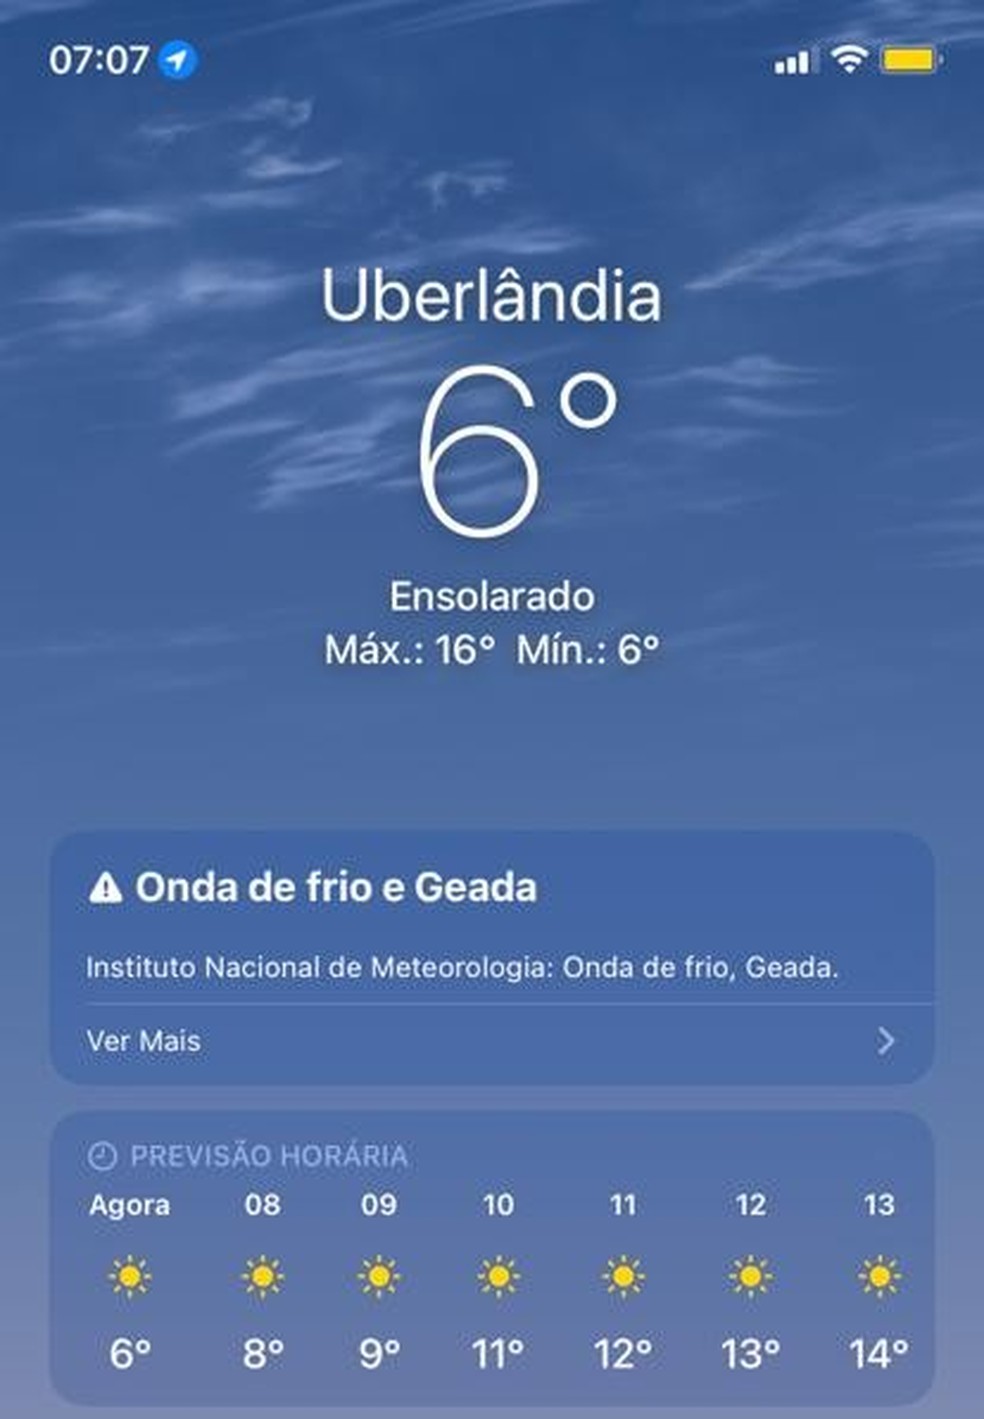 Temperaturas registradas em telefone no Bairro Santa Mônica em Uberlândia — Foto: Arquivo Pessoal